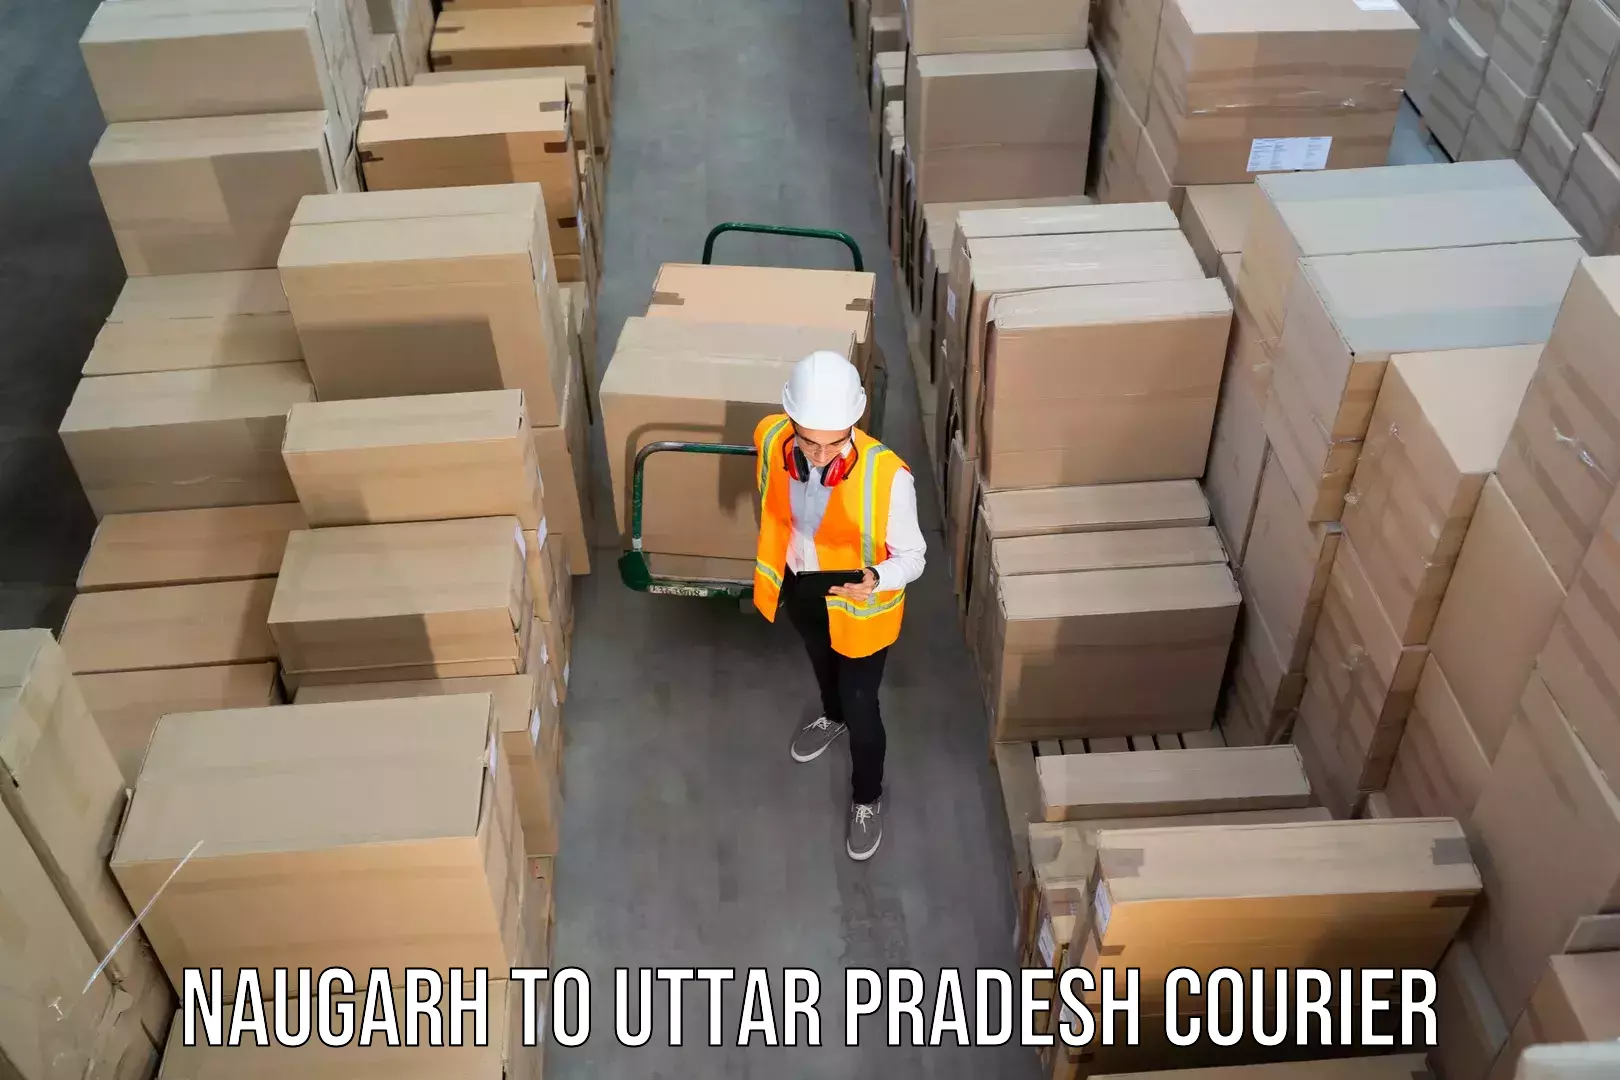 Courier service partnerships Naugarh to Uttar Pradesh